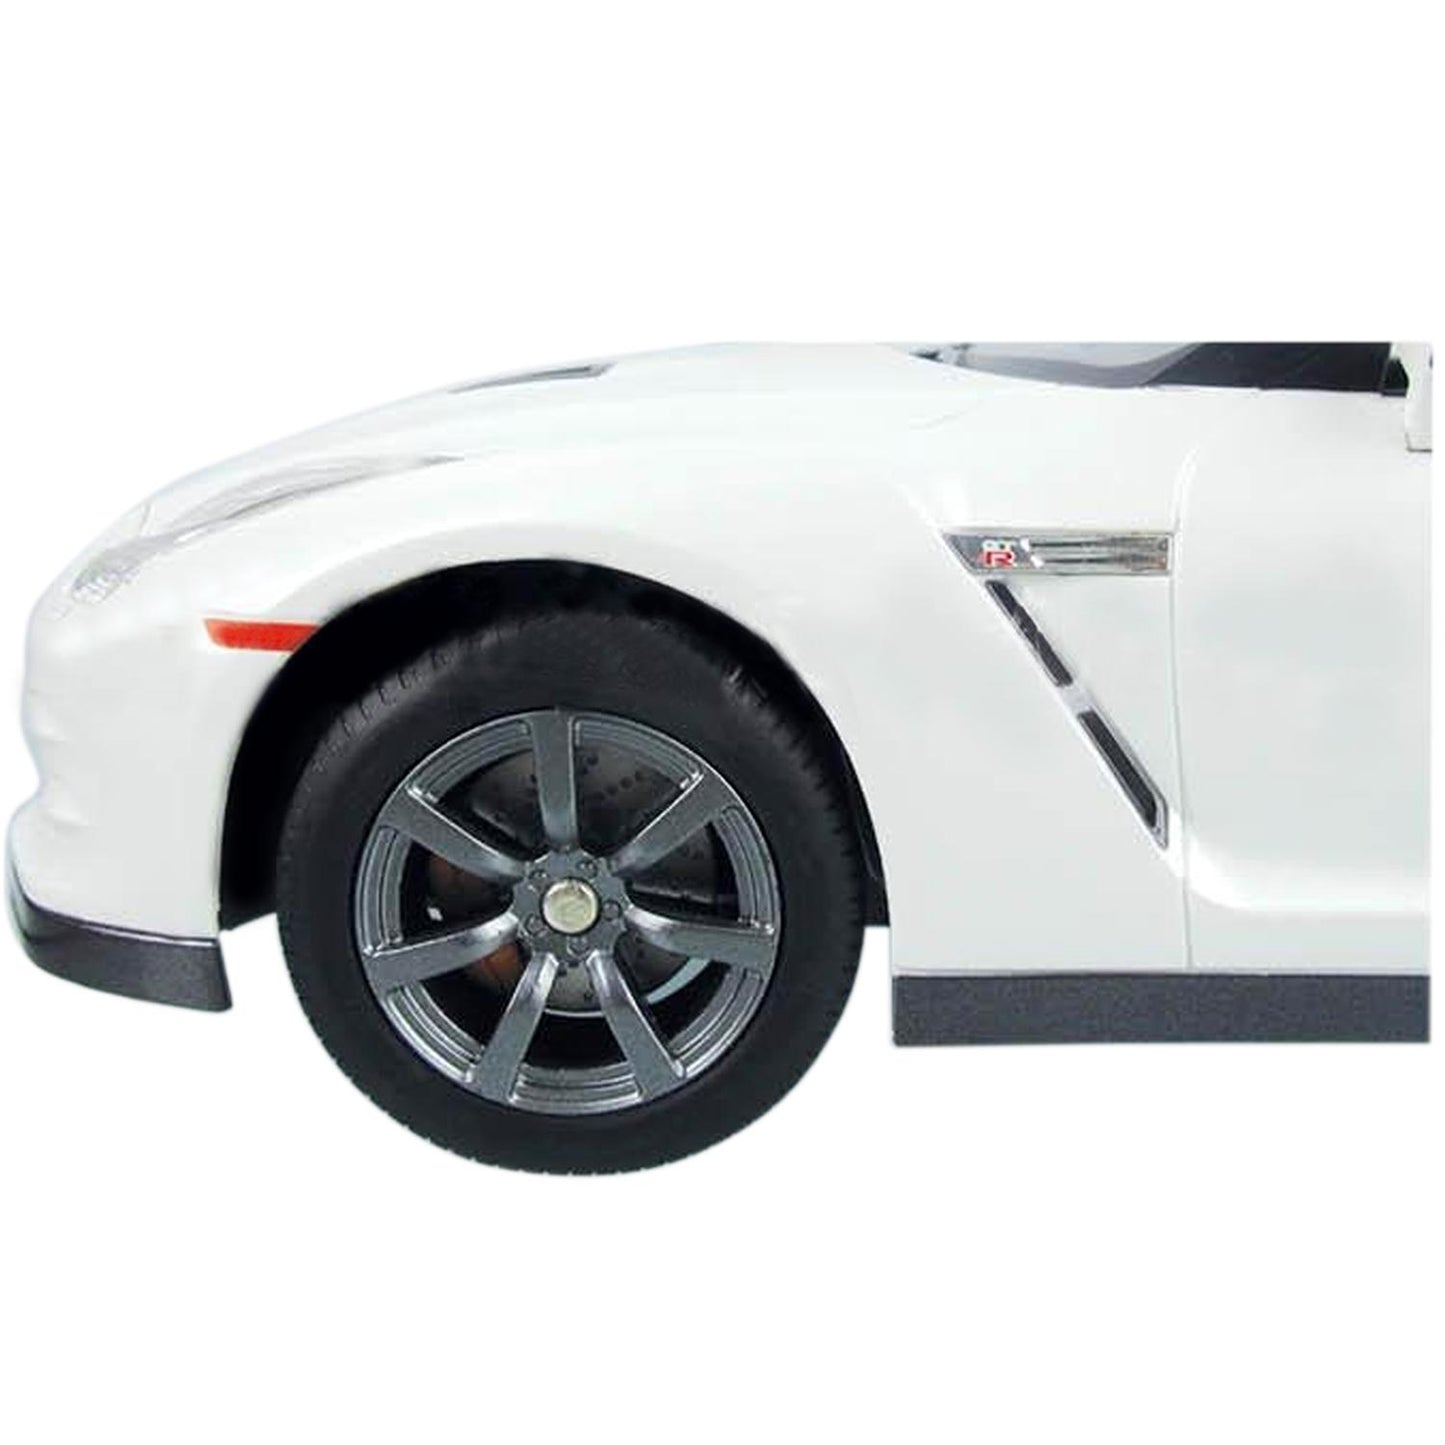 Nissan GTR~White